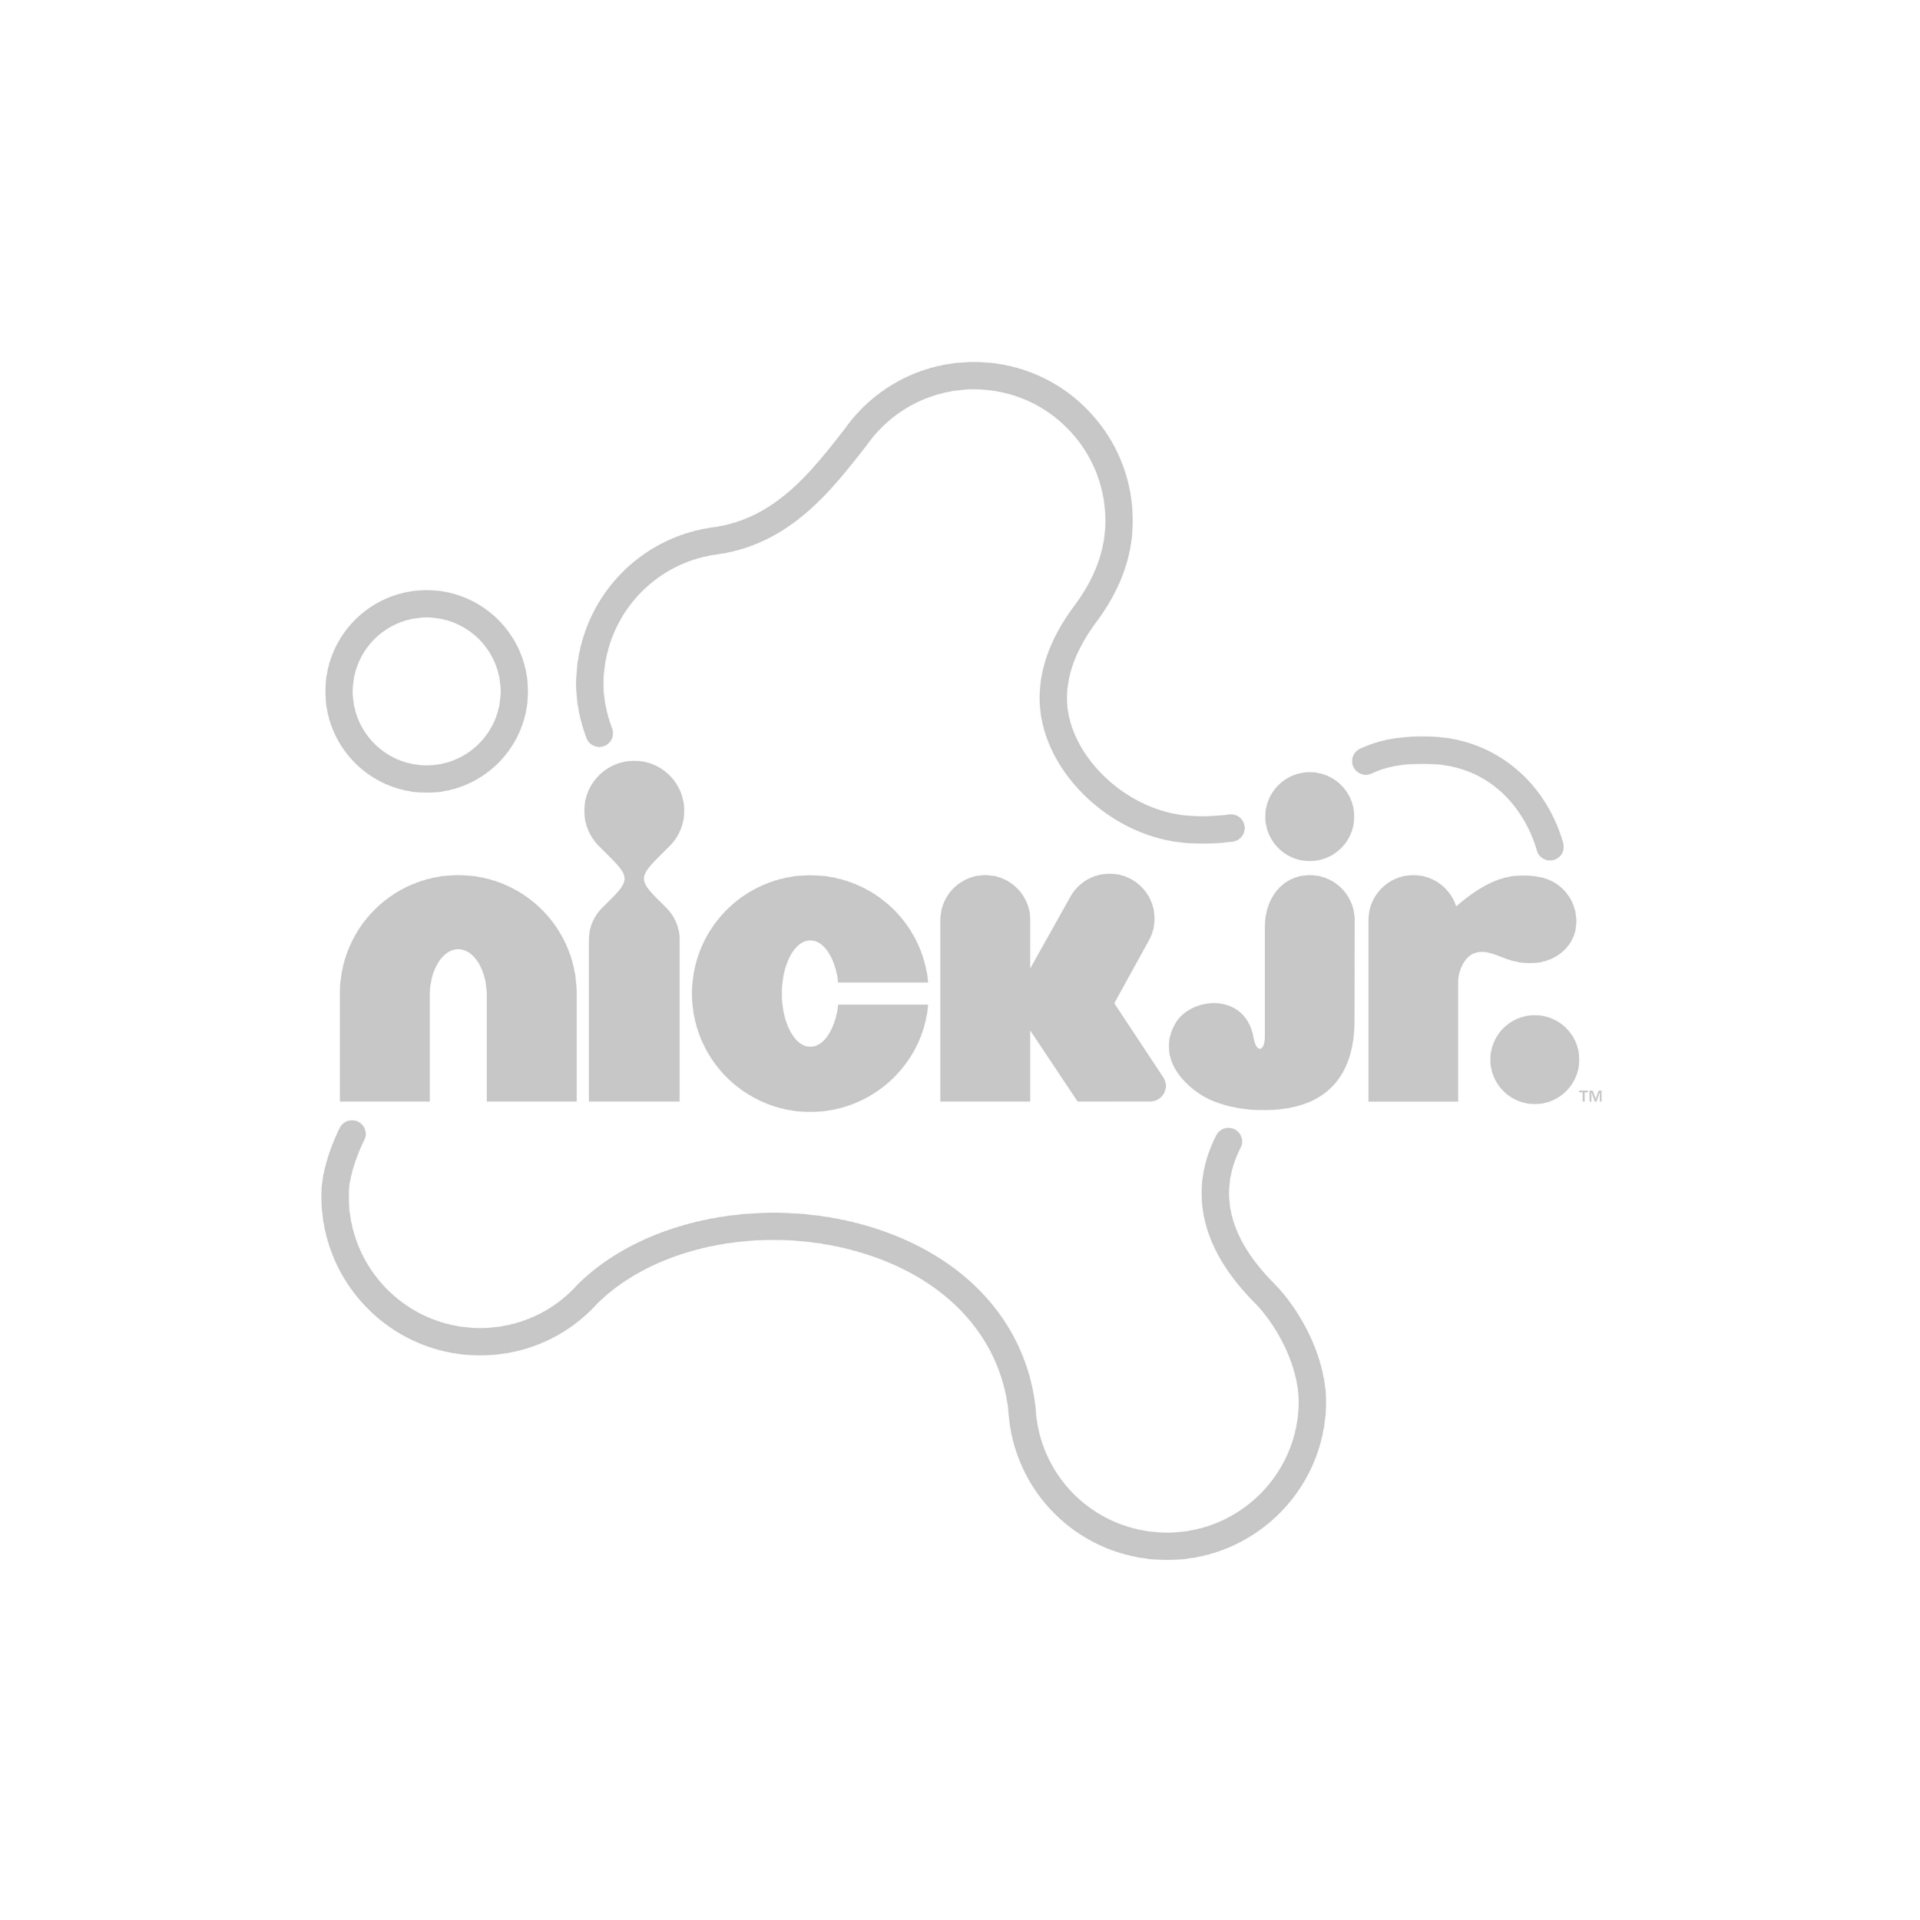 nickelodeon junior logo